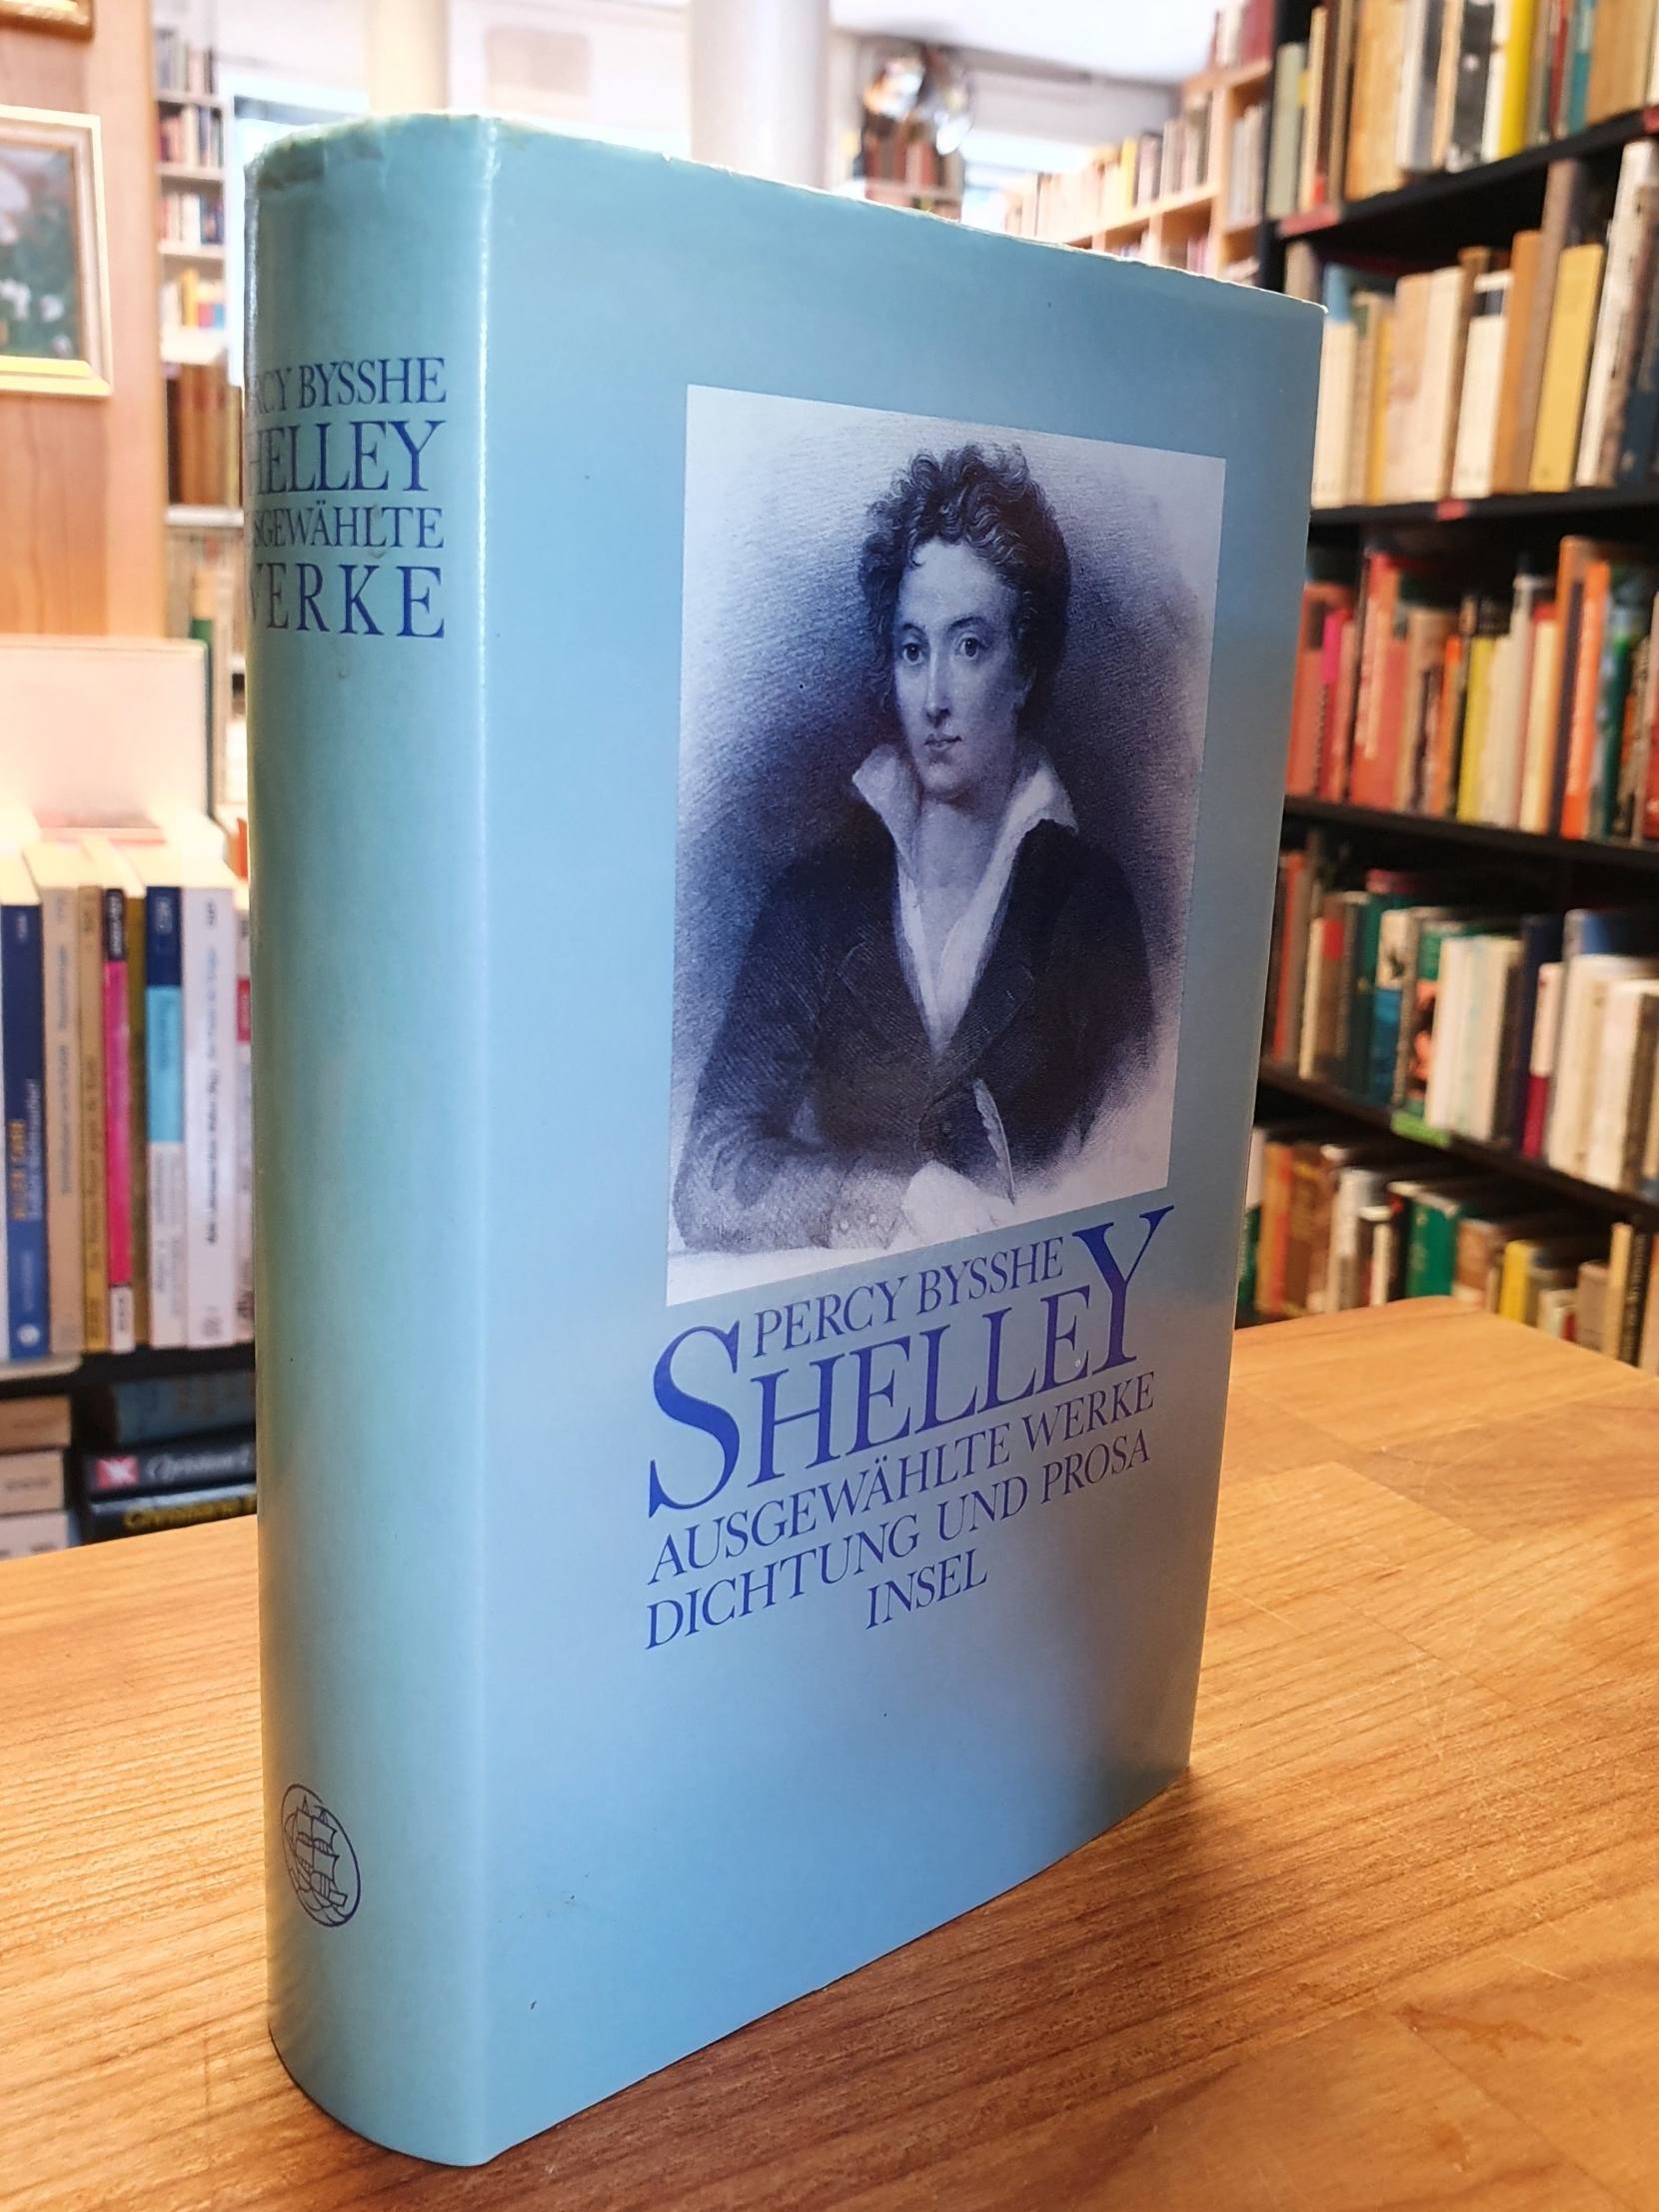 Shelley, Ausgewählte Werke – Dichtung und Prosa,